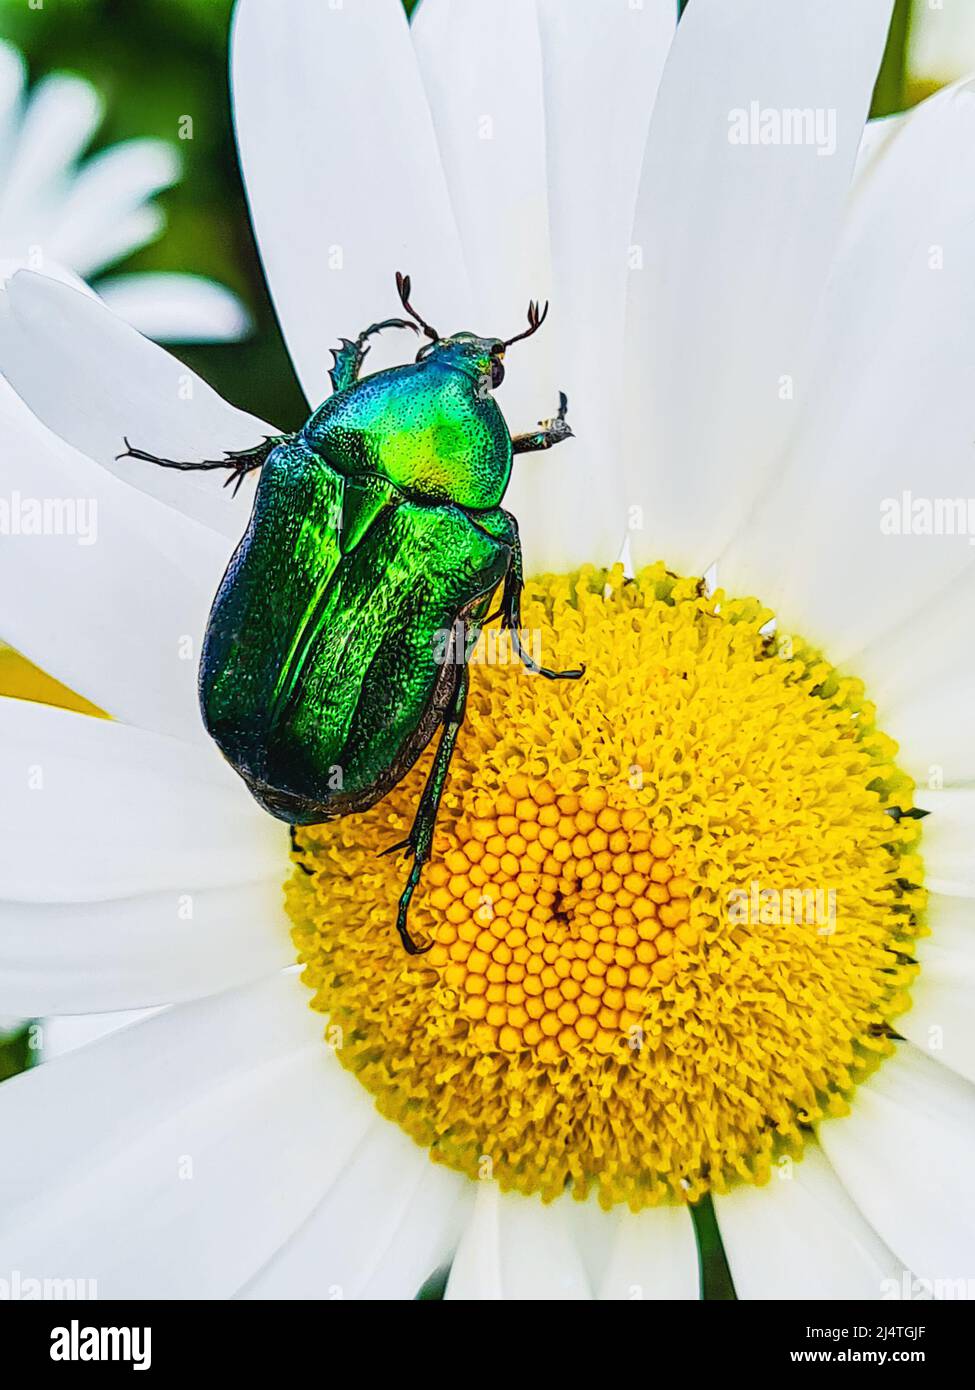 Grosso coleottero verde sul fiore. L'insetto lucido si siede su una margherita bianca. Foto Stock